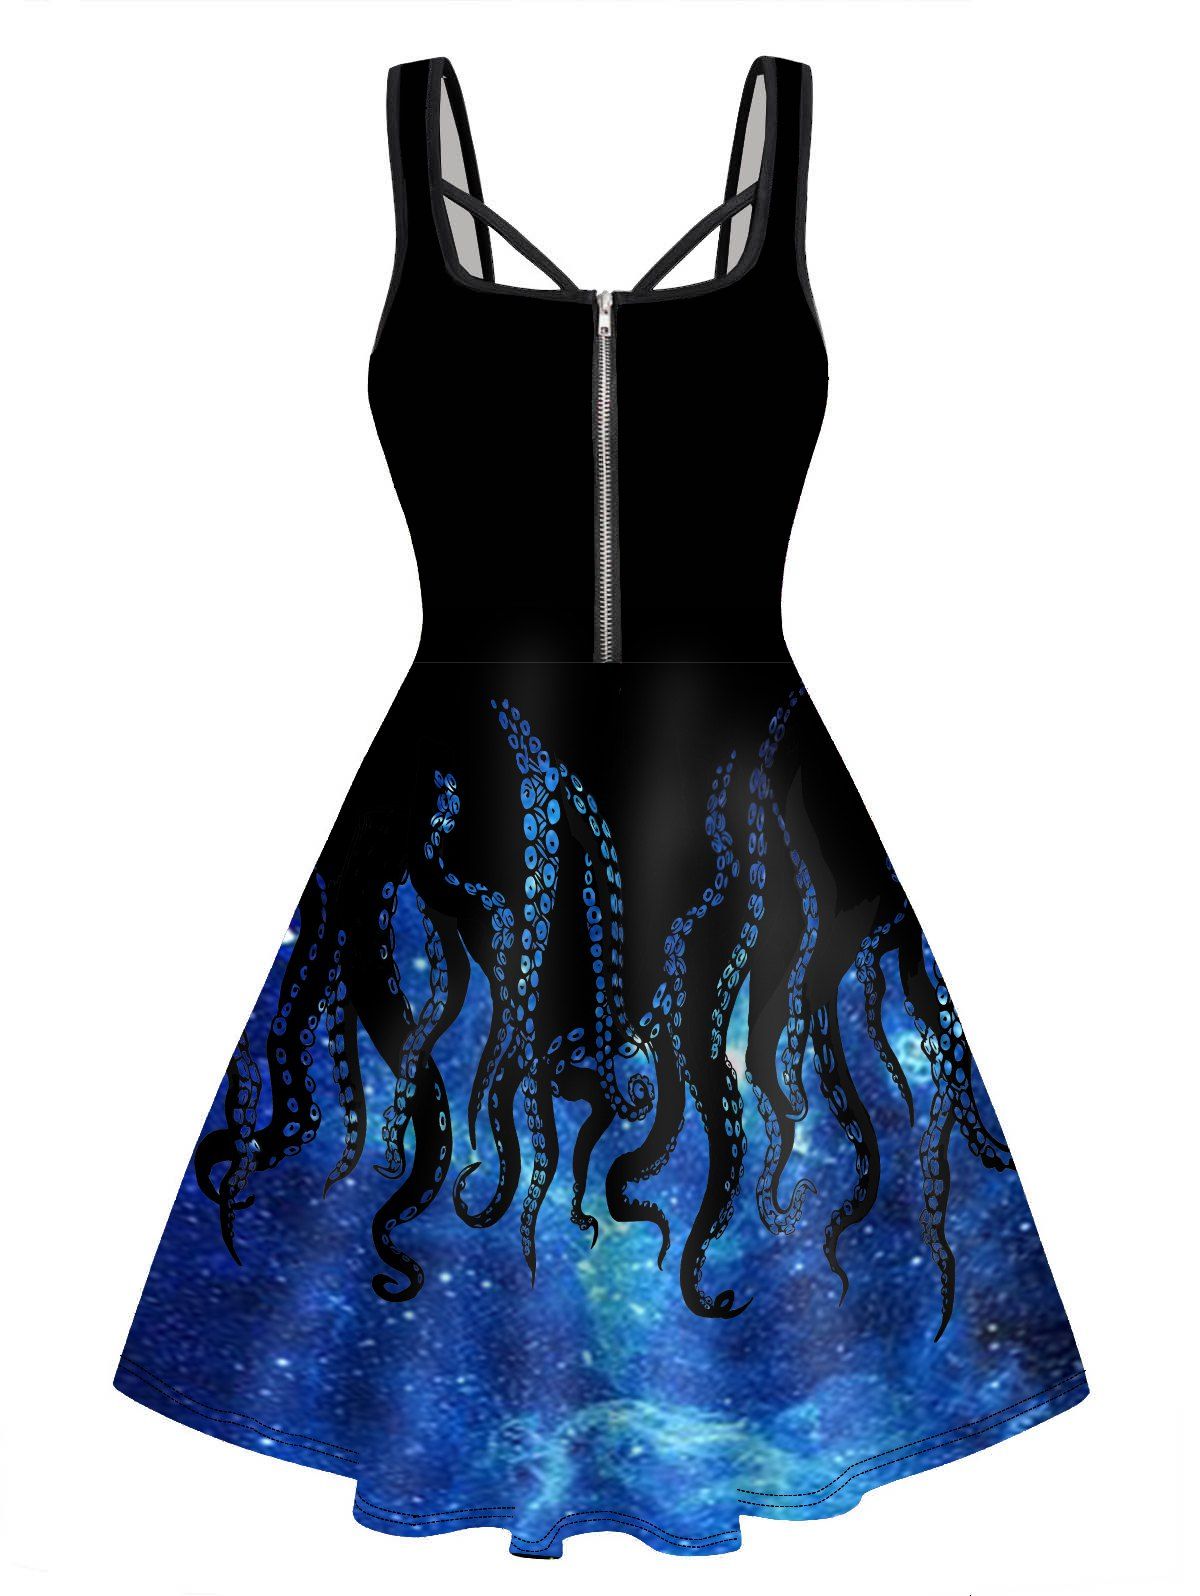 Galaxy Octopus Print Mini Dress Half Zipper Sleeveless A Line Cami Dress - BLUE L